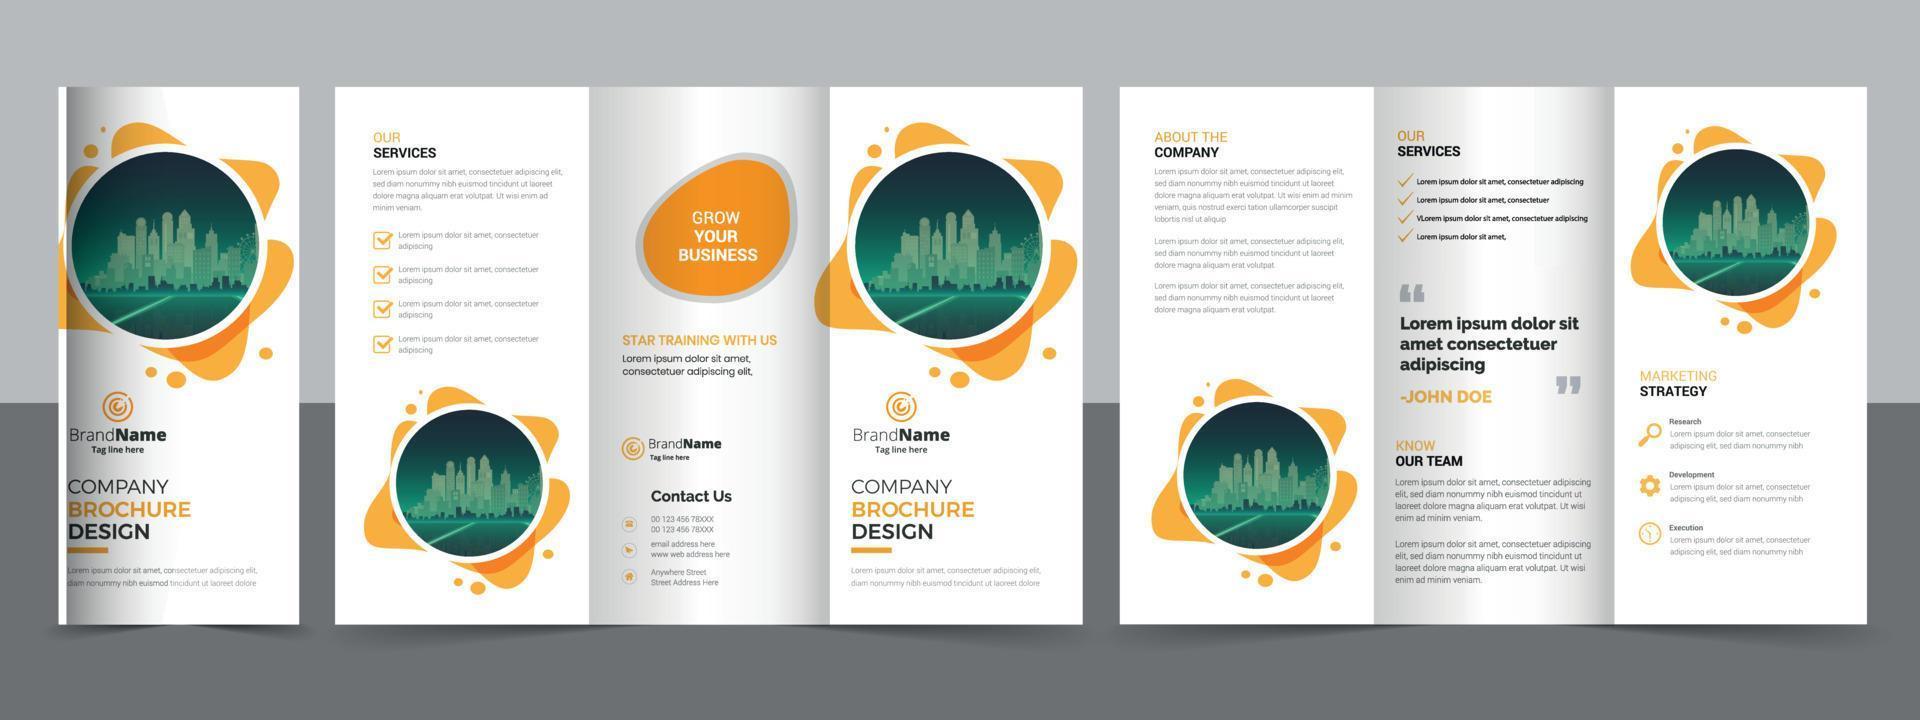 kreativa företags moderna företag trifold broschyr malldesign. vektor